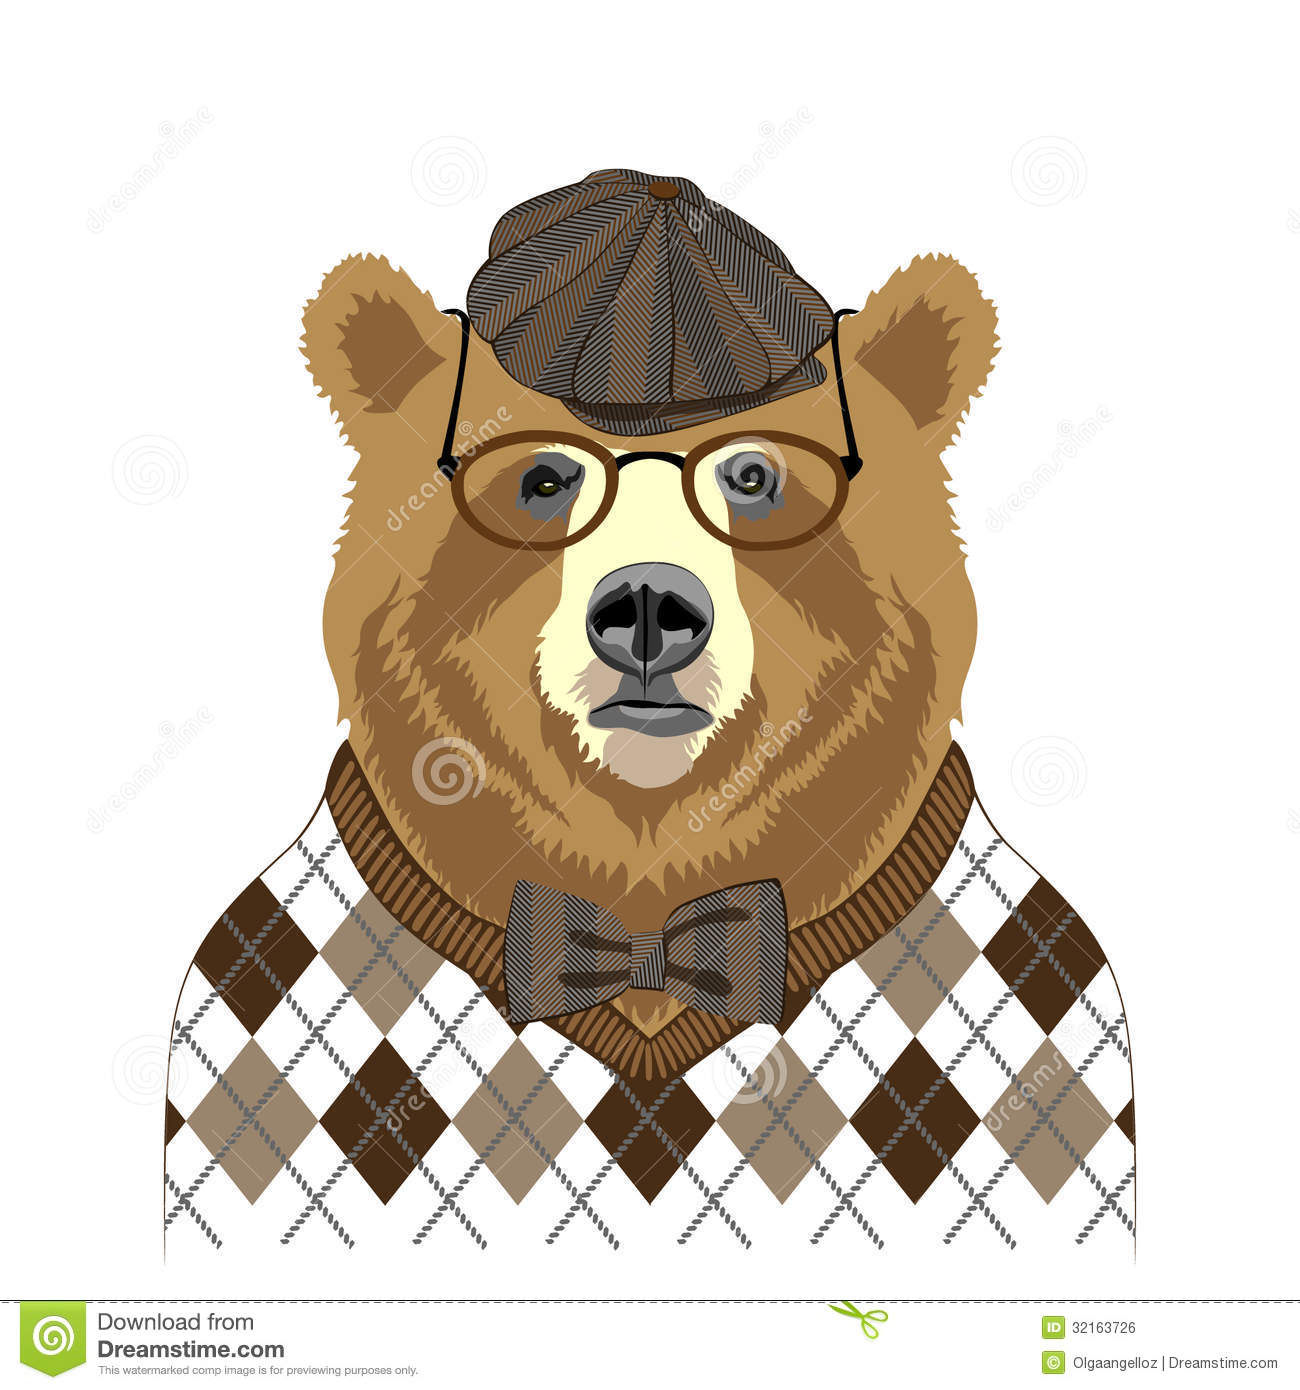 bear-portrait-retro-look-vector-illustration-32163726.jpg